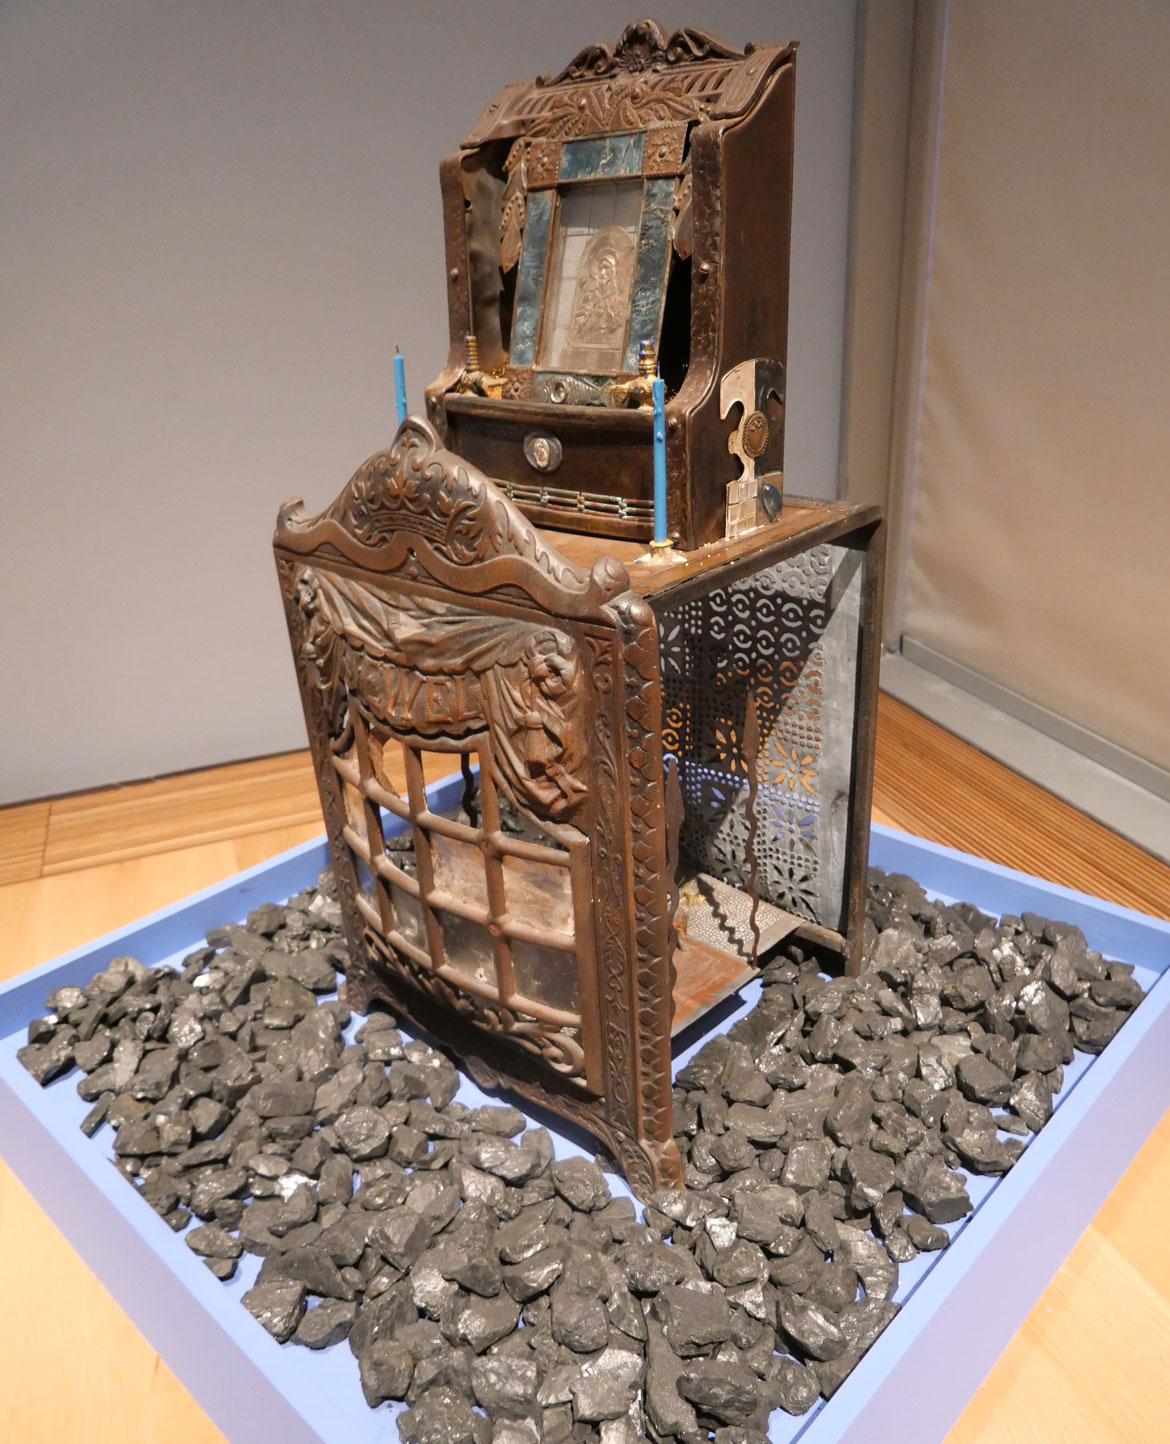 Betye Saar, "Jewel of Ogun," 1977, Mixed media sculpture.